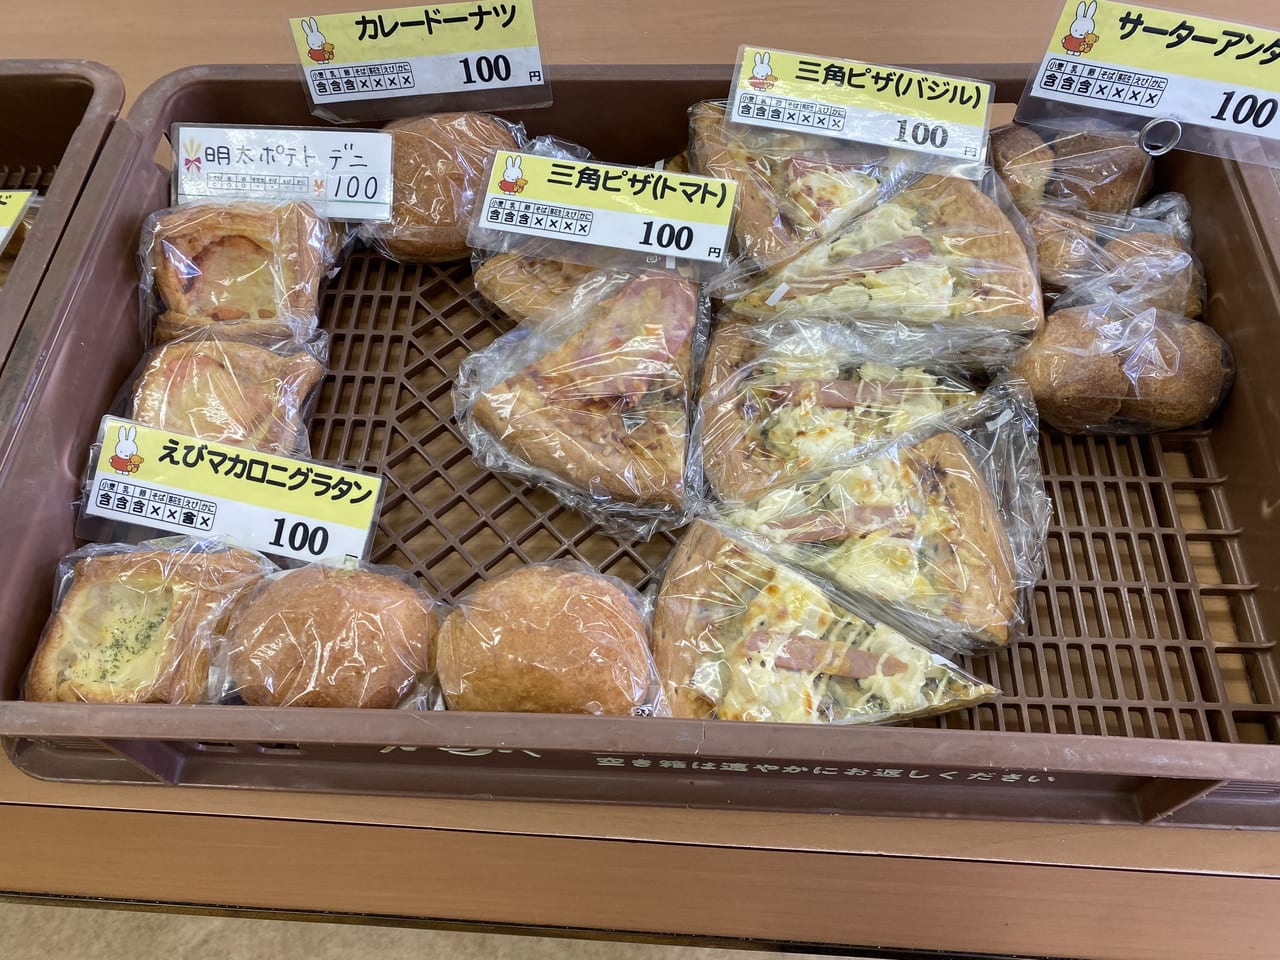 小平市 買いすぎ注意 あけぼのパンの直売所 美味しい出来たてパンがずらりと並んだ工場直営のパン屋さんです 号外net 小平市